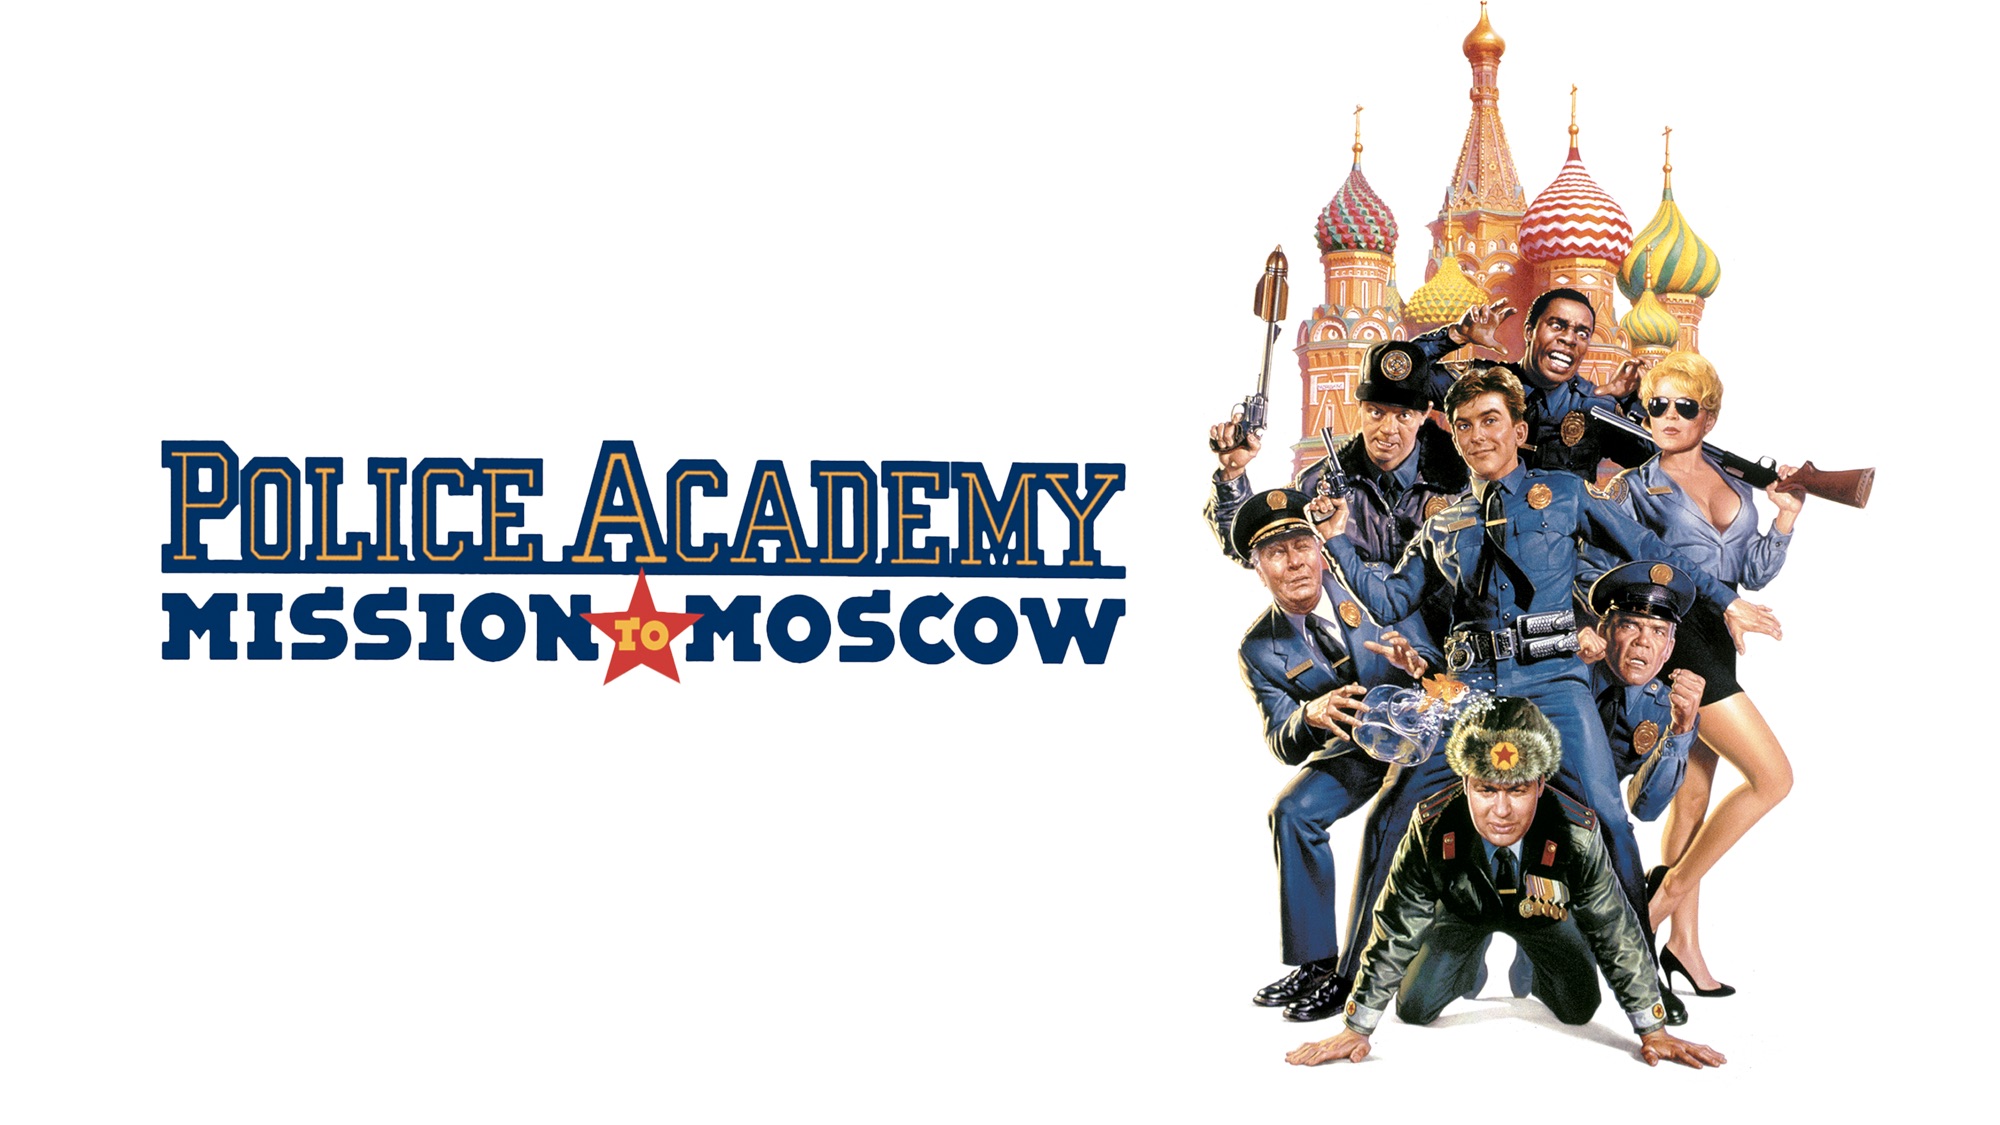 Академия 7. Полицейская Академия 7 Постер. Полицейская Академия 7 миссия в Москве. Полицейская Академия 7: миссия в Москве фильм 1994. Полицейская Академия 7. миссия в Москве (1994) Постер.